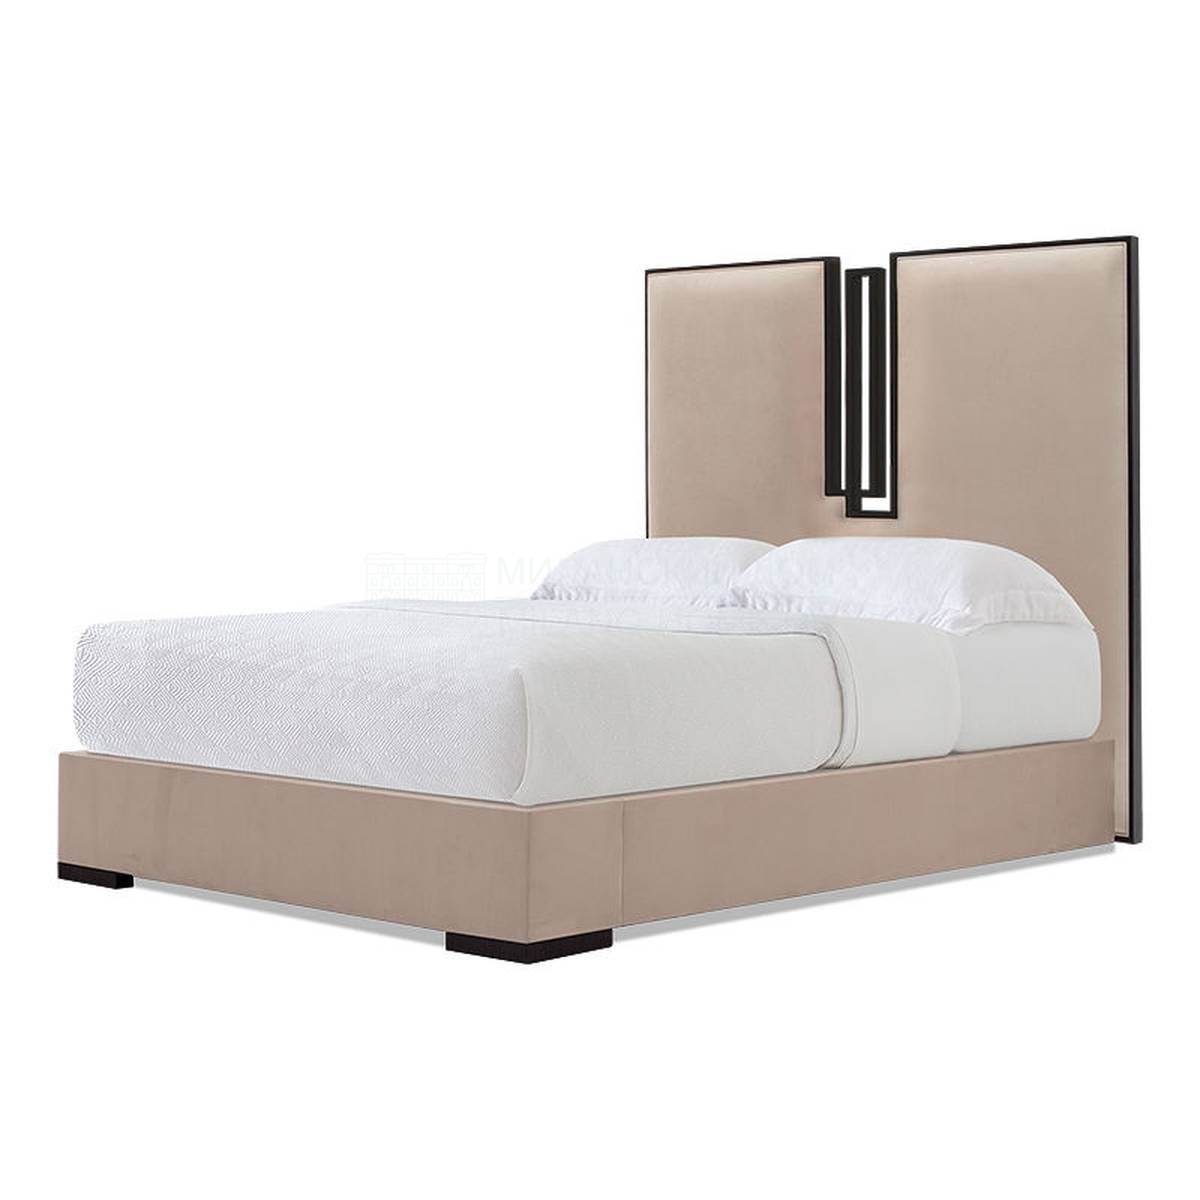 Кровать с мягким изголовьем Pavia bed из США фабрики CHRISTOPHER GUY